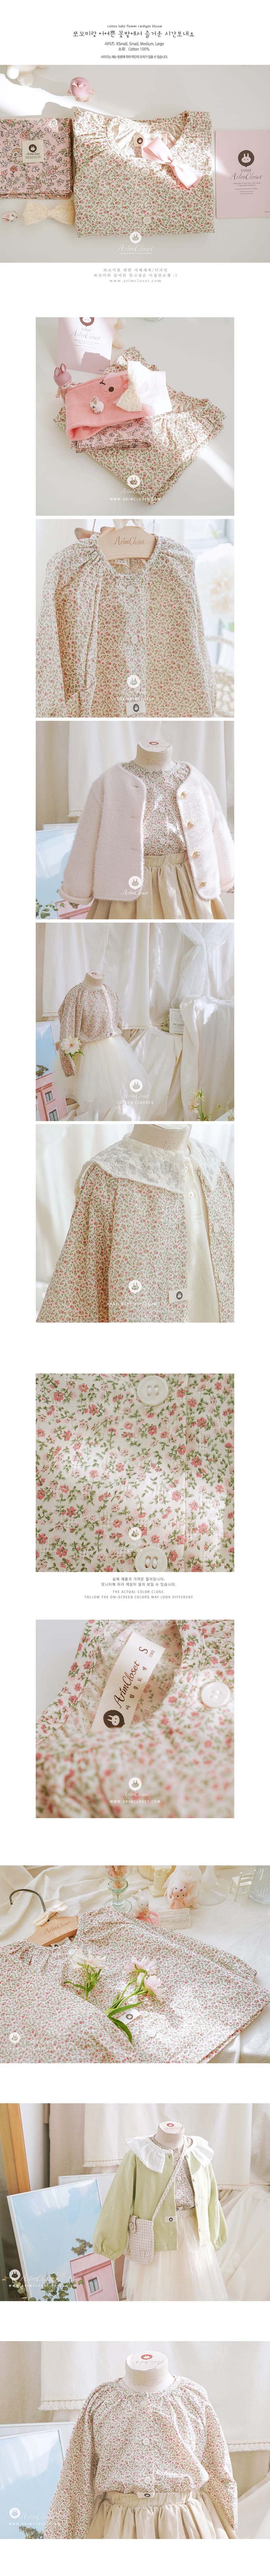 Arim Closet - Korean Baby Fashion - #babyclothing - Flower Cardigan Blouse - 2